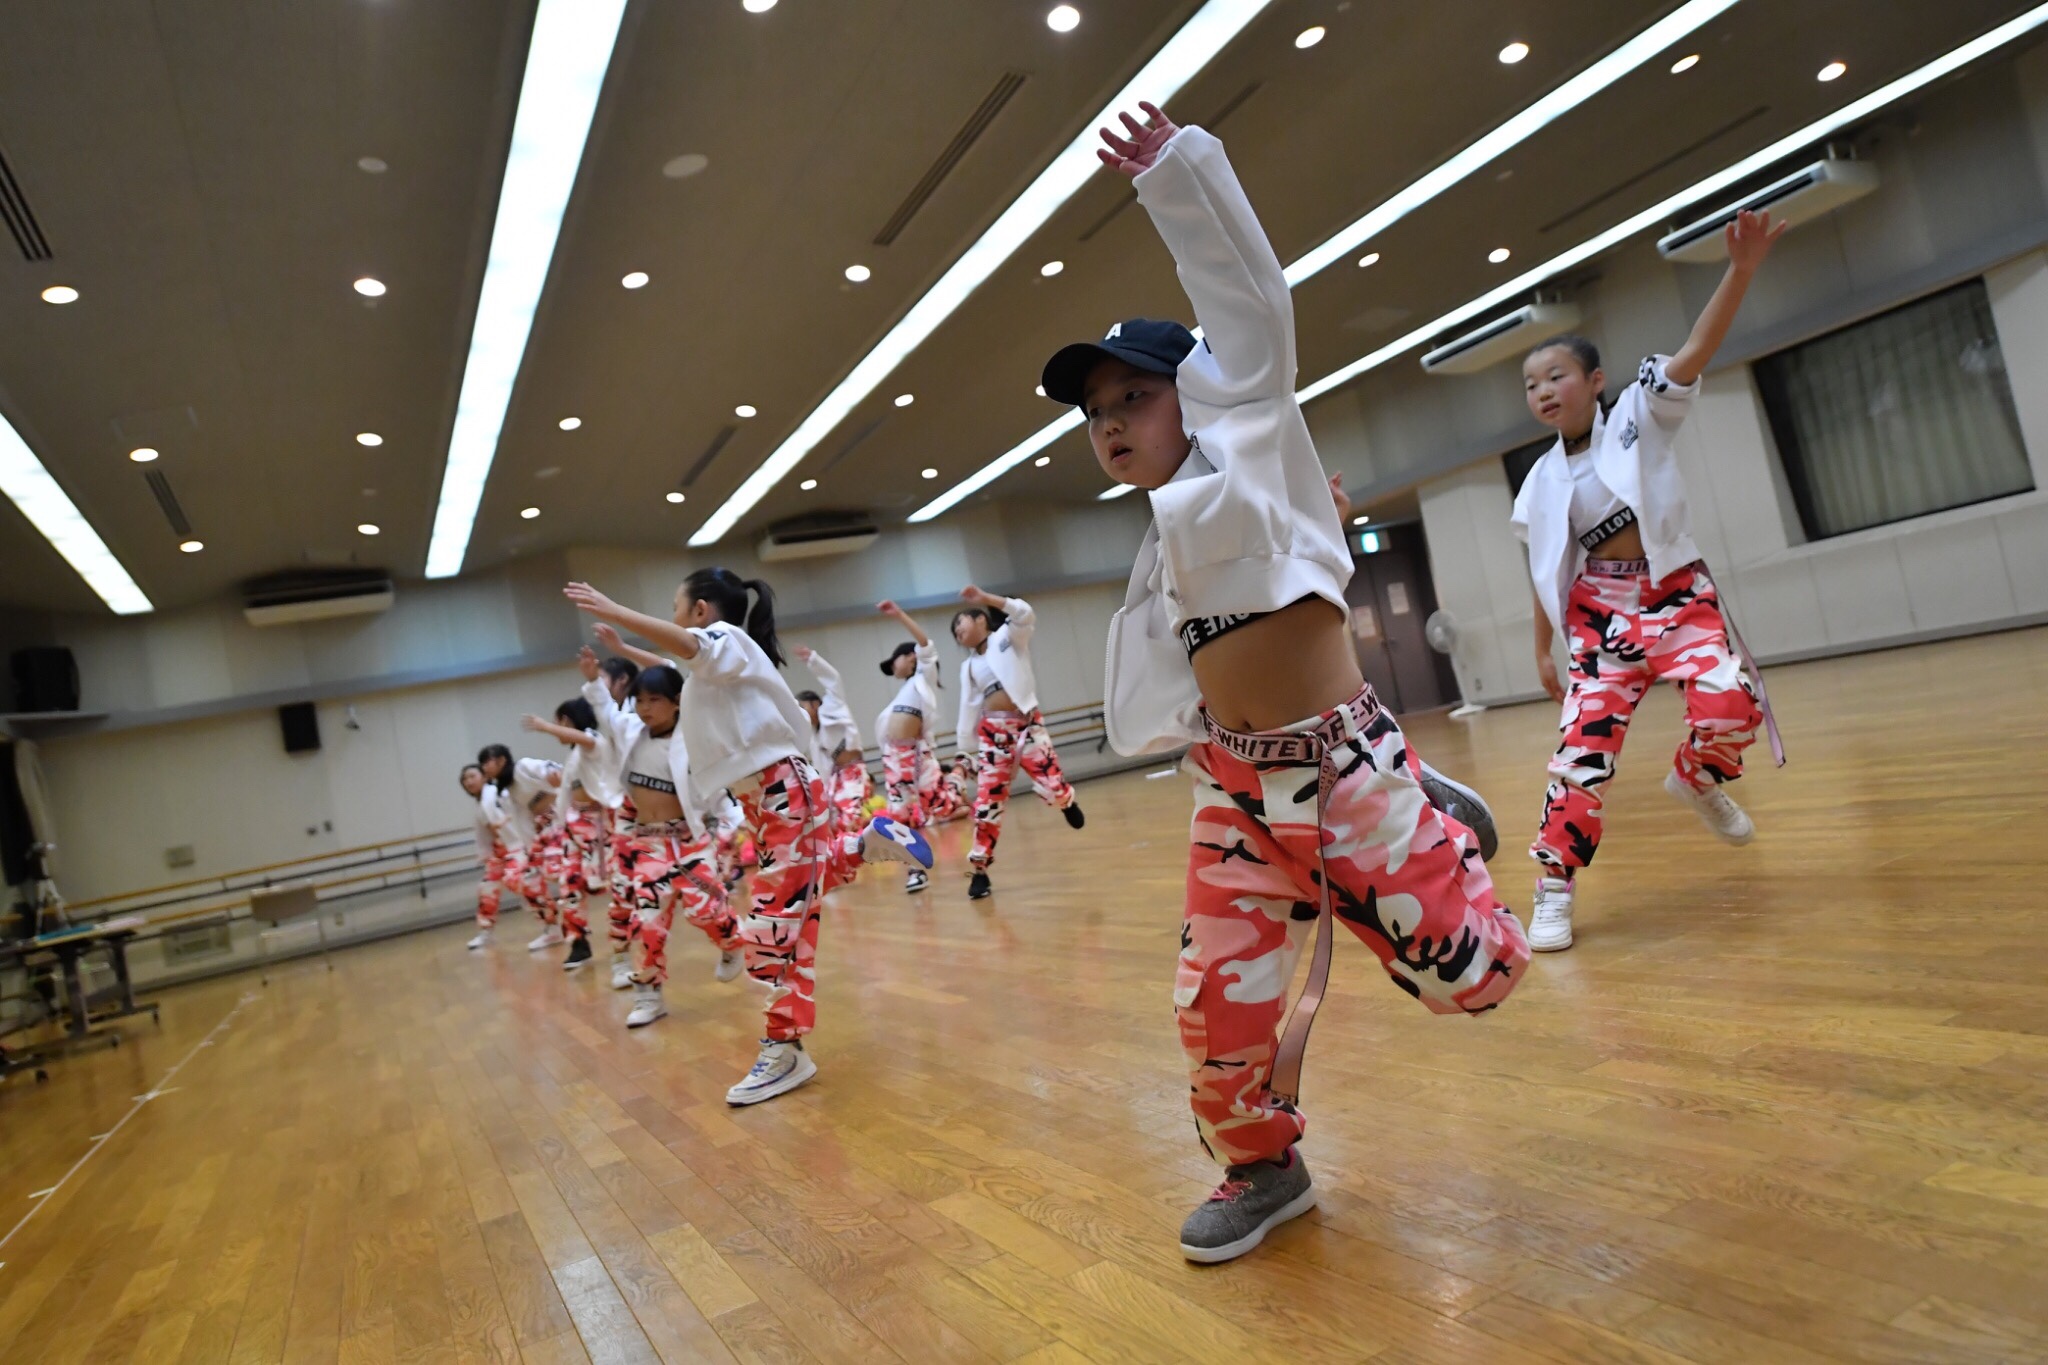 ヒップホップダンスとは チアダンスの4つのジャンル〜その2〜【Gravis】神奈川・東京で人気のチア・キッズ